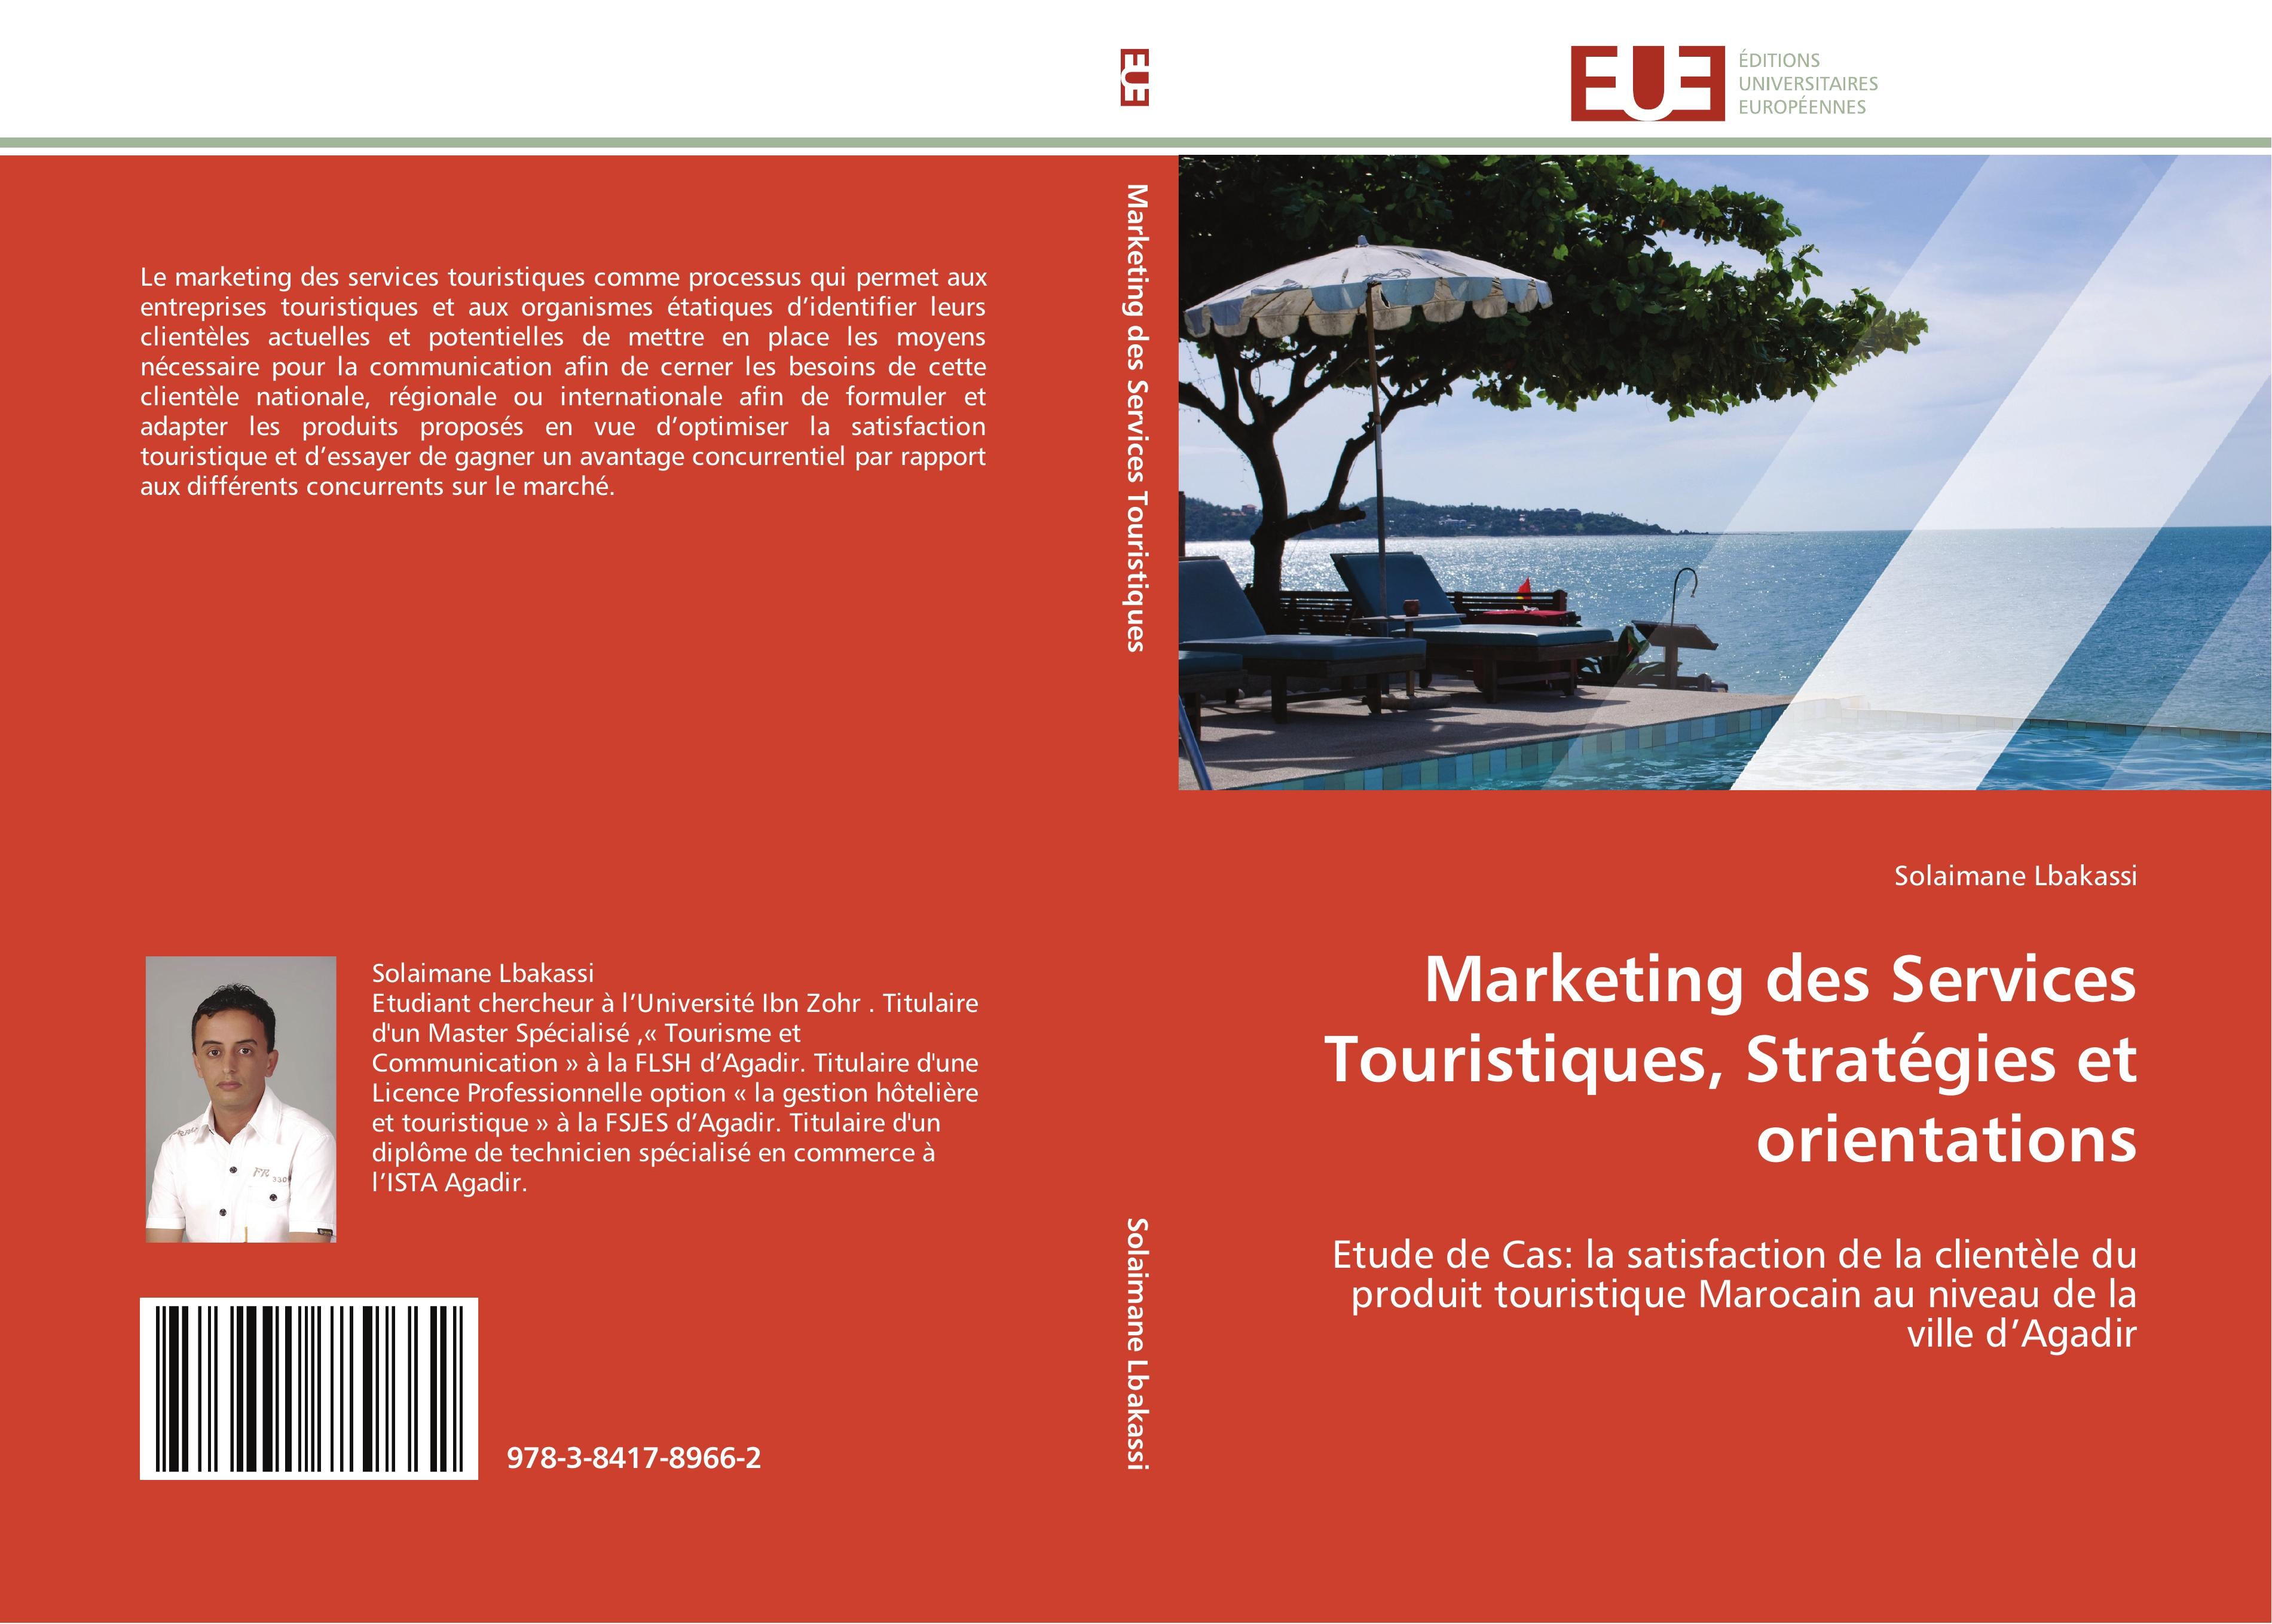 Marketing des Services Touristiques, Stratégies et orientations - Solaimane Lbakassi